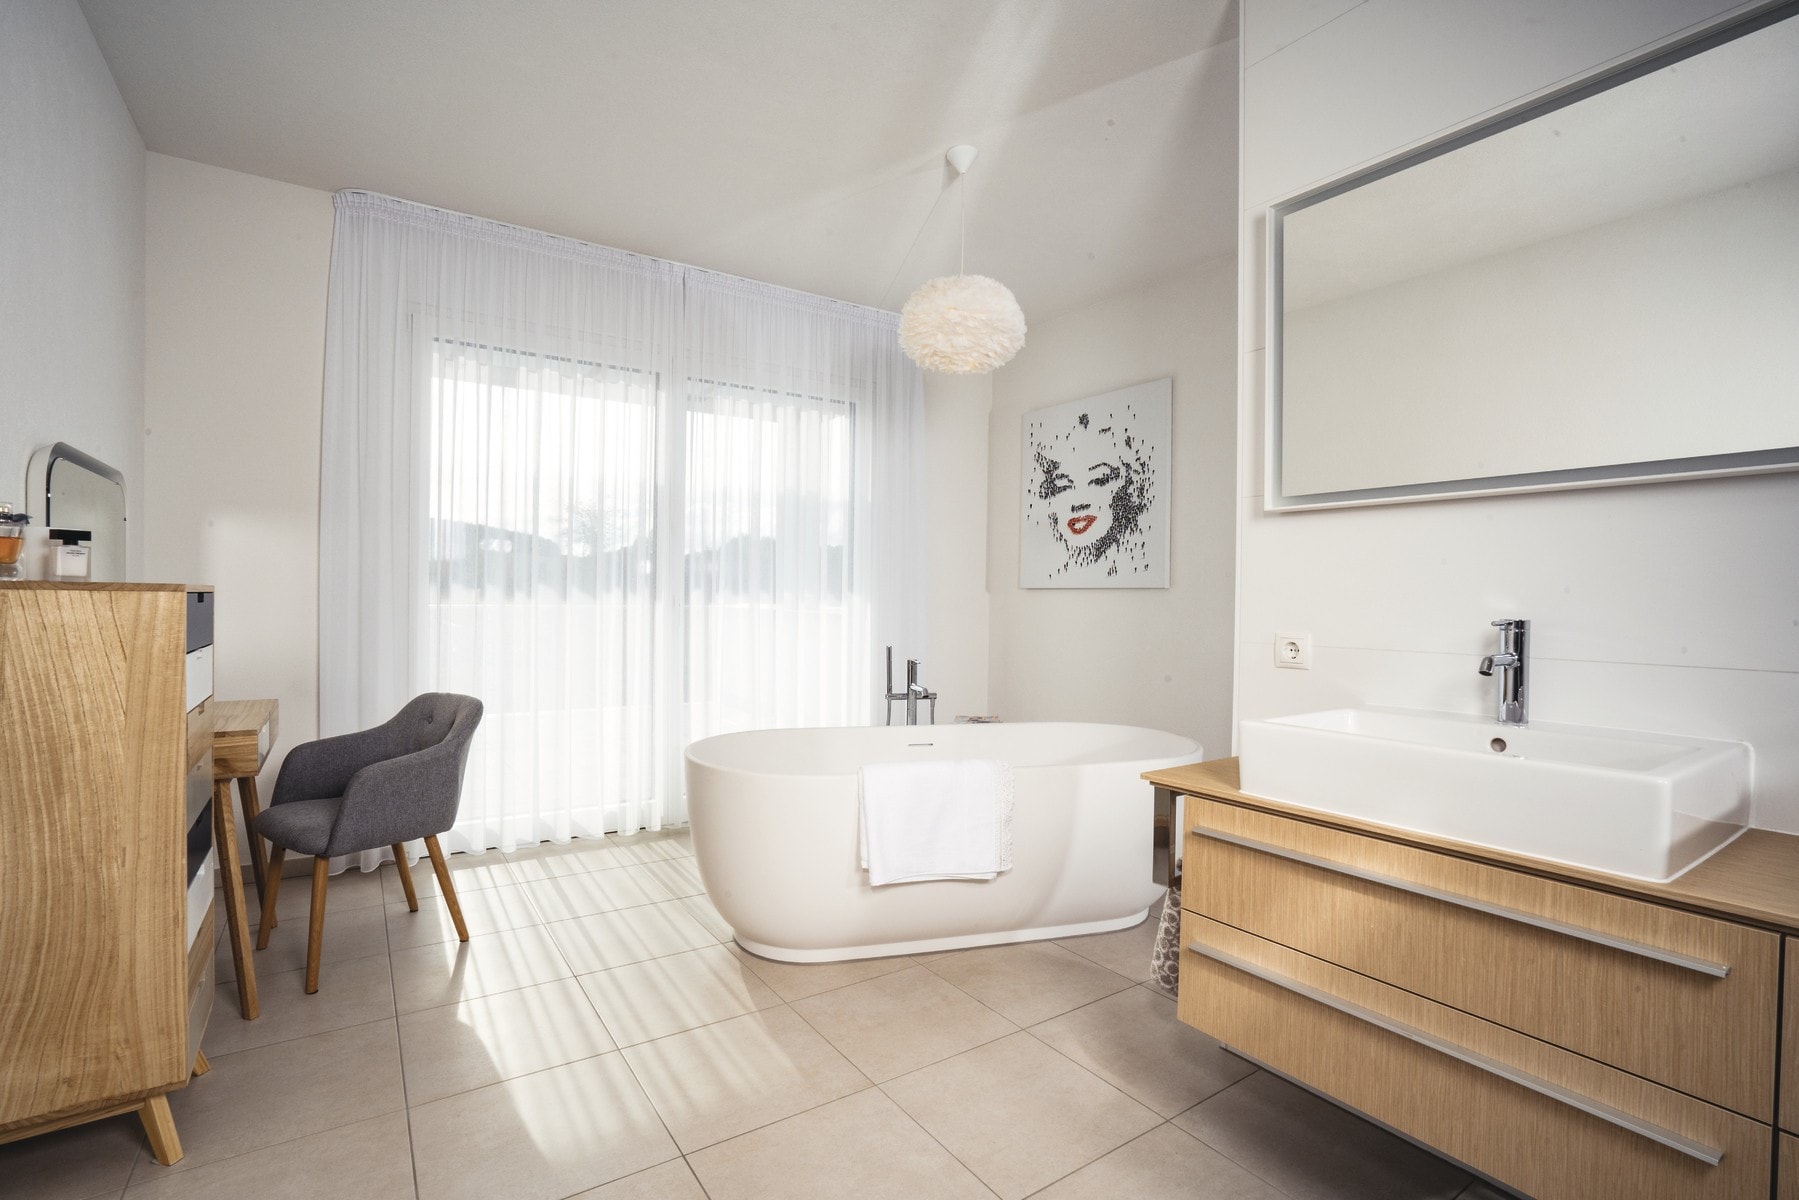 Badezimmer Inneneinrichtung modern mit freistehender Badewanne und Waschtisch - Haus Design Ideen innen Bauhaus Villa WeberHaus Fertighaus - HausbauDirekt.de